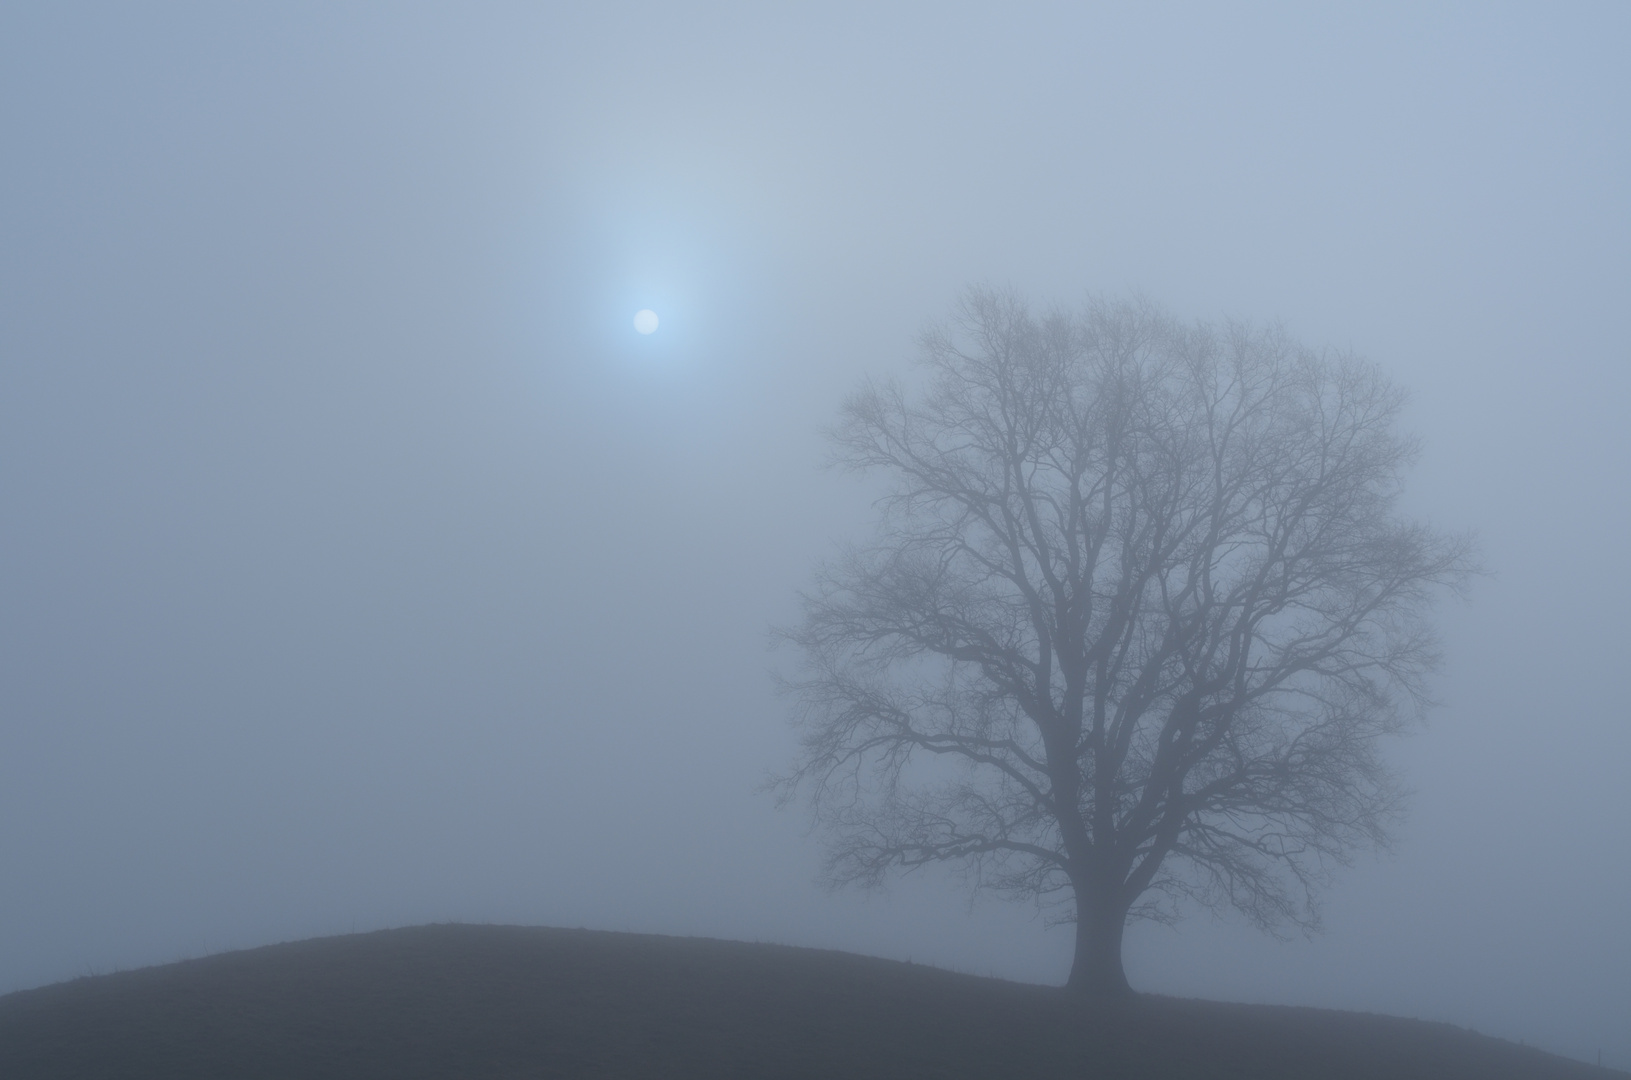 nebel in die nähe von starnberg